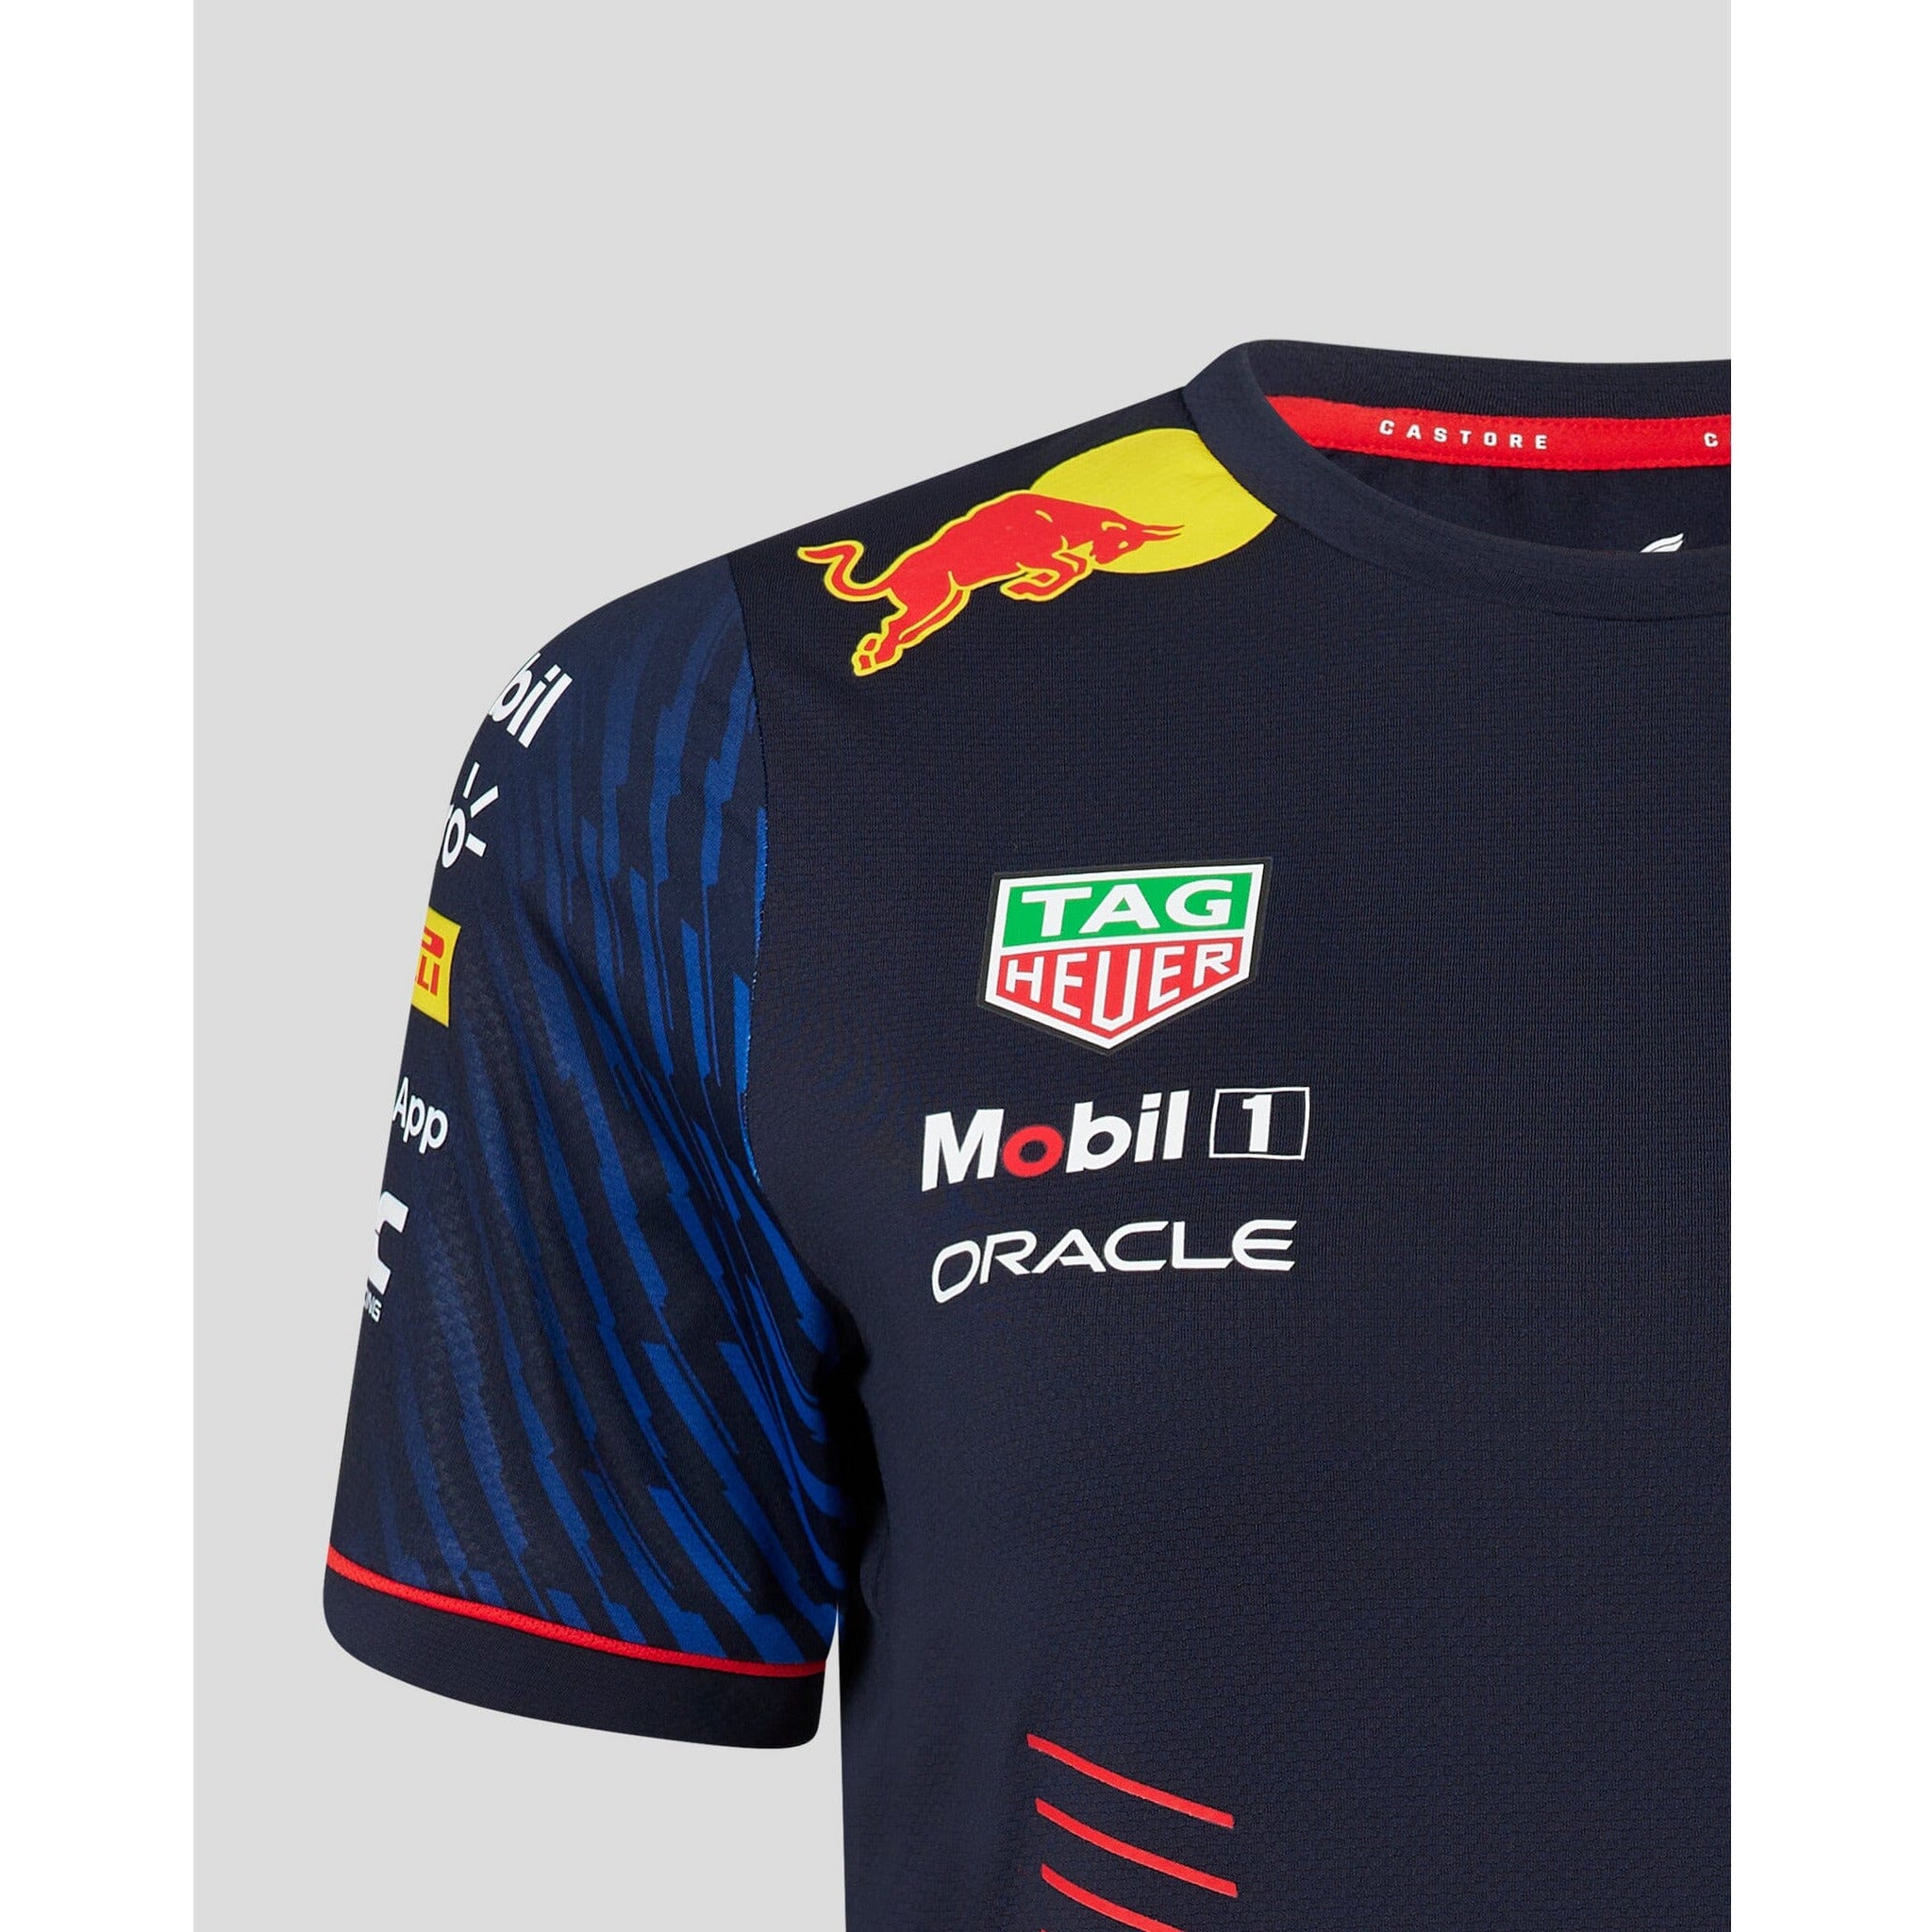 Red Bull Racing F1 Team Graphic T-Shirt - Navy/White – CMC